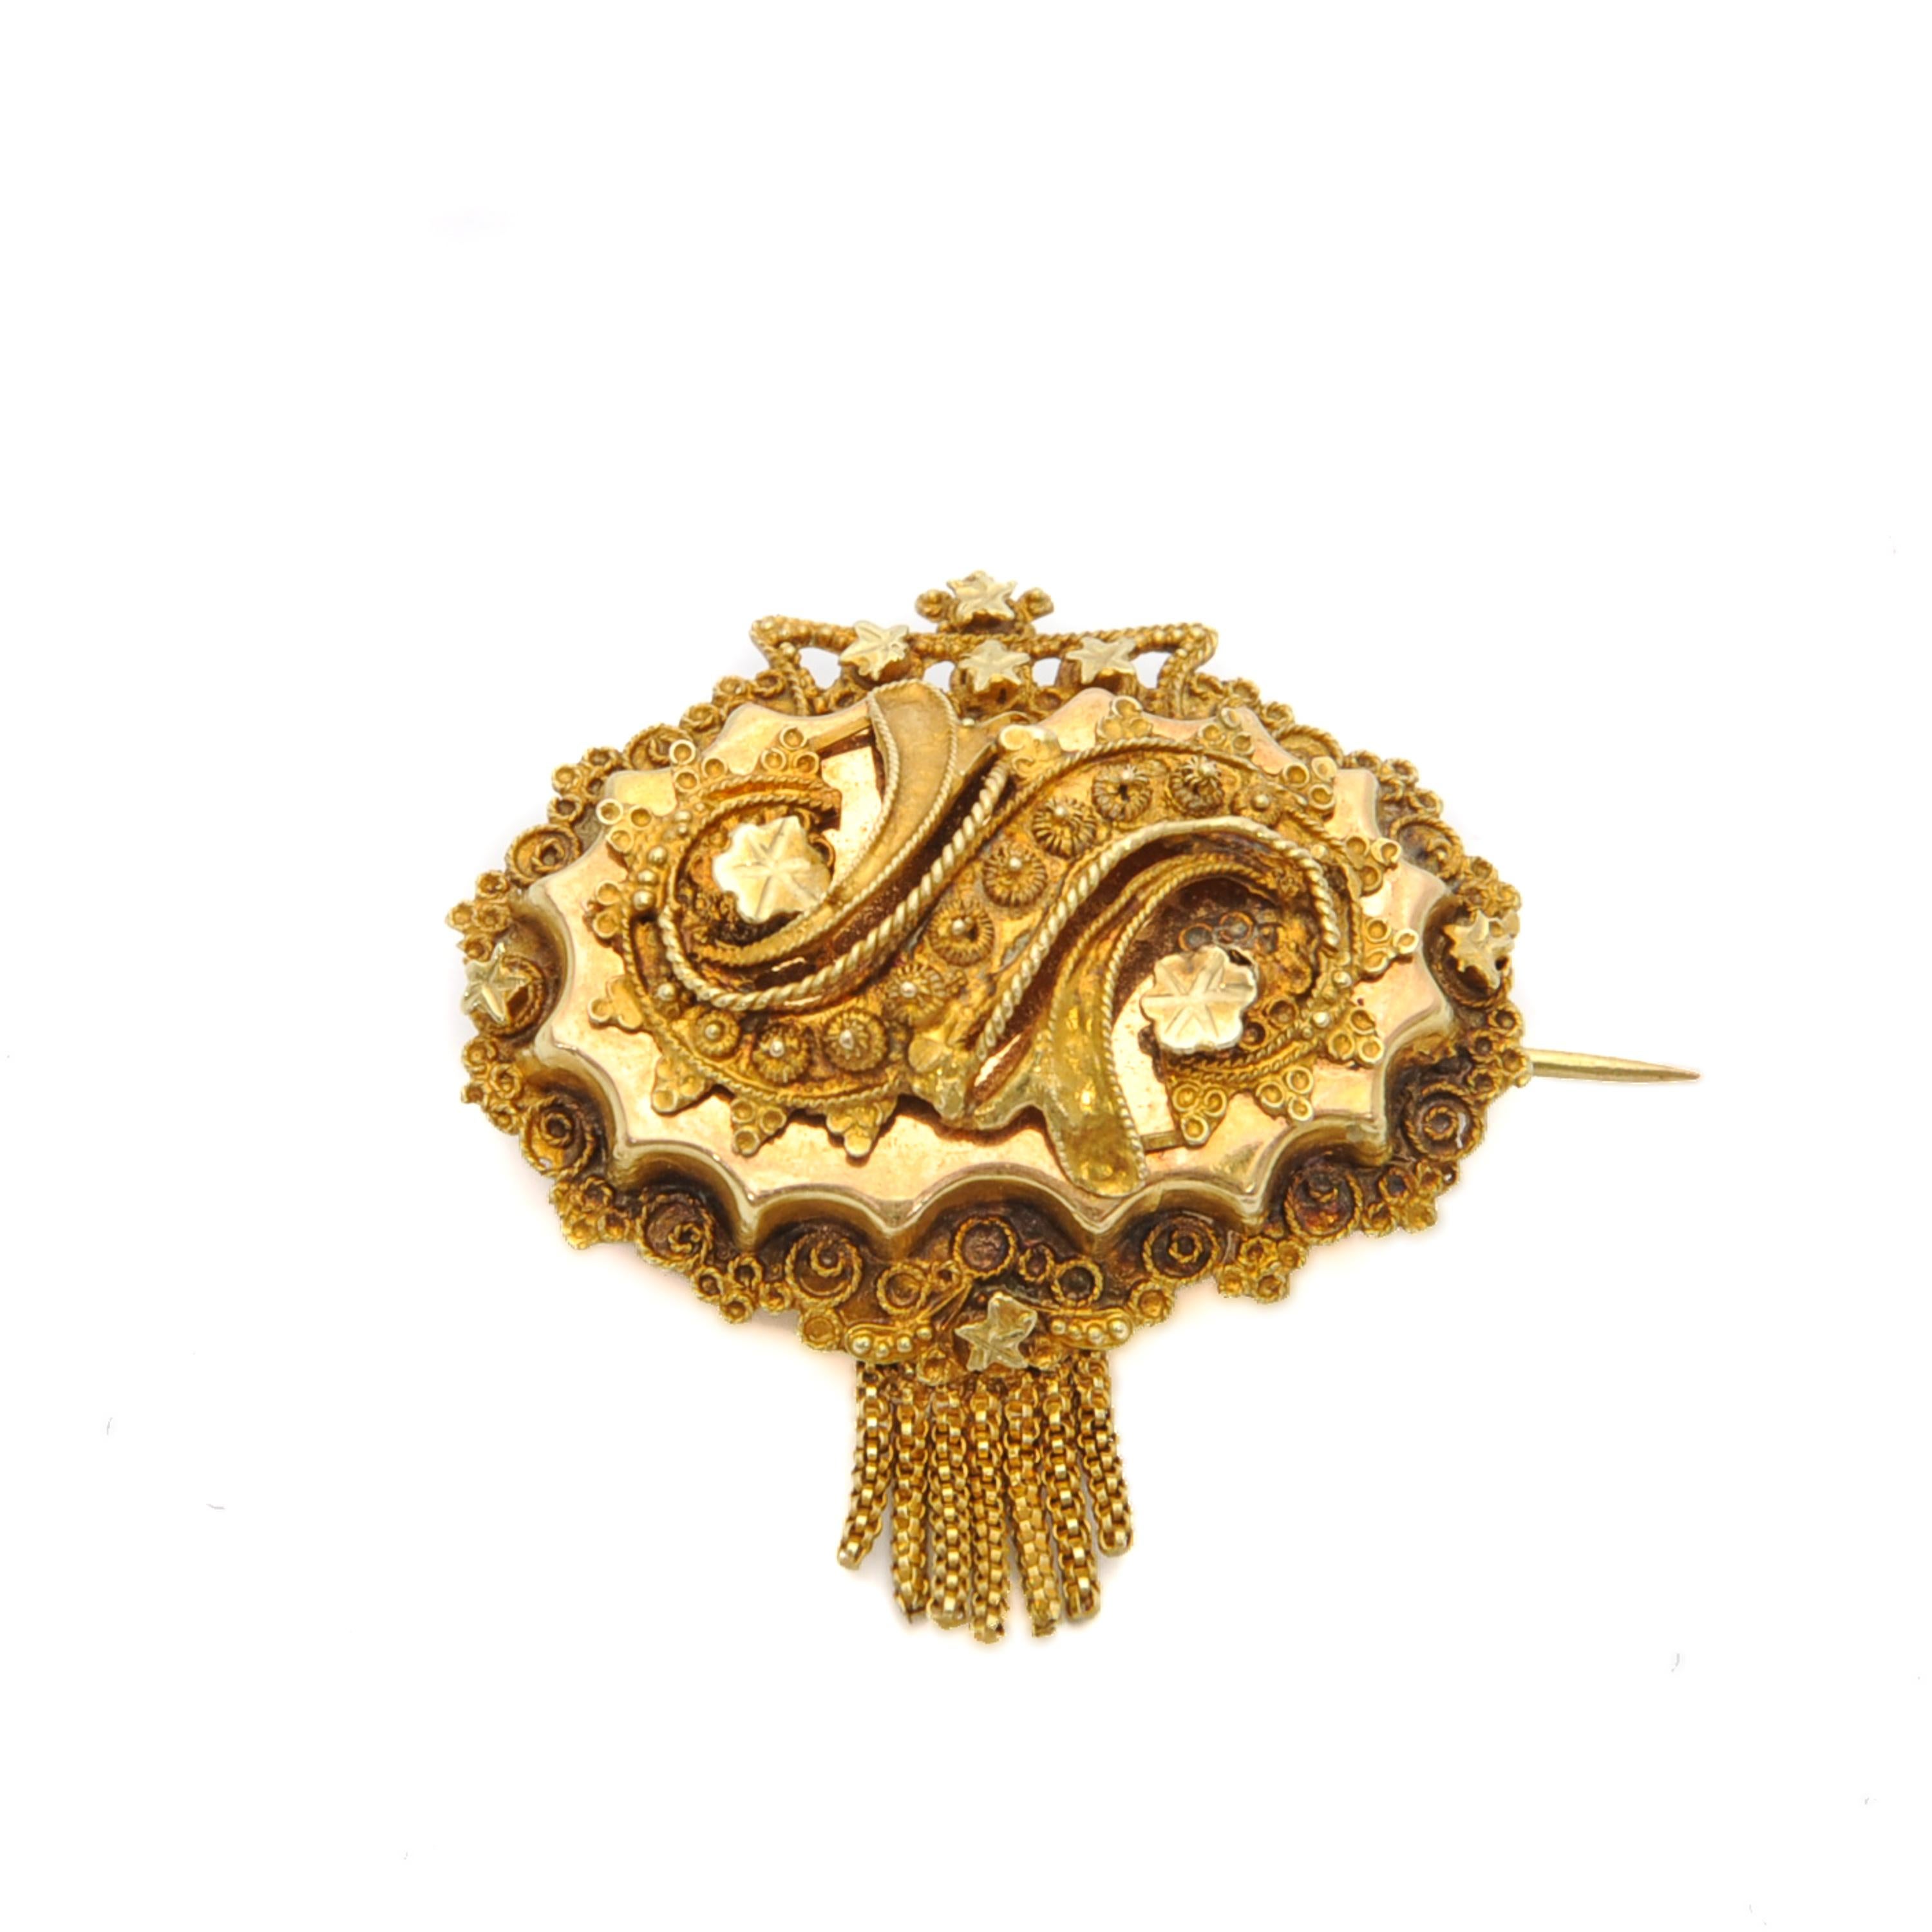 Il s'agit d'une broche ancienne en or 14 carats du 19e siècle, créée avec un fin travail de cannetille. La broche de forme ovale est ornée de cannetilles, d'étoiles et d'une couronne sur le dessus. La broche est sertie de sept glands qui se